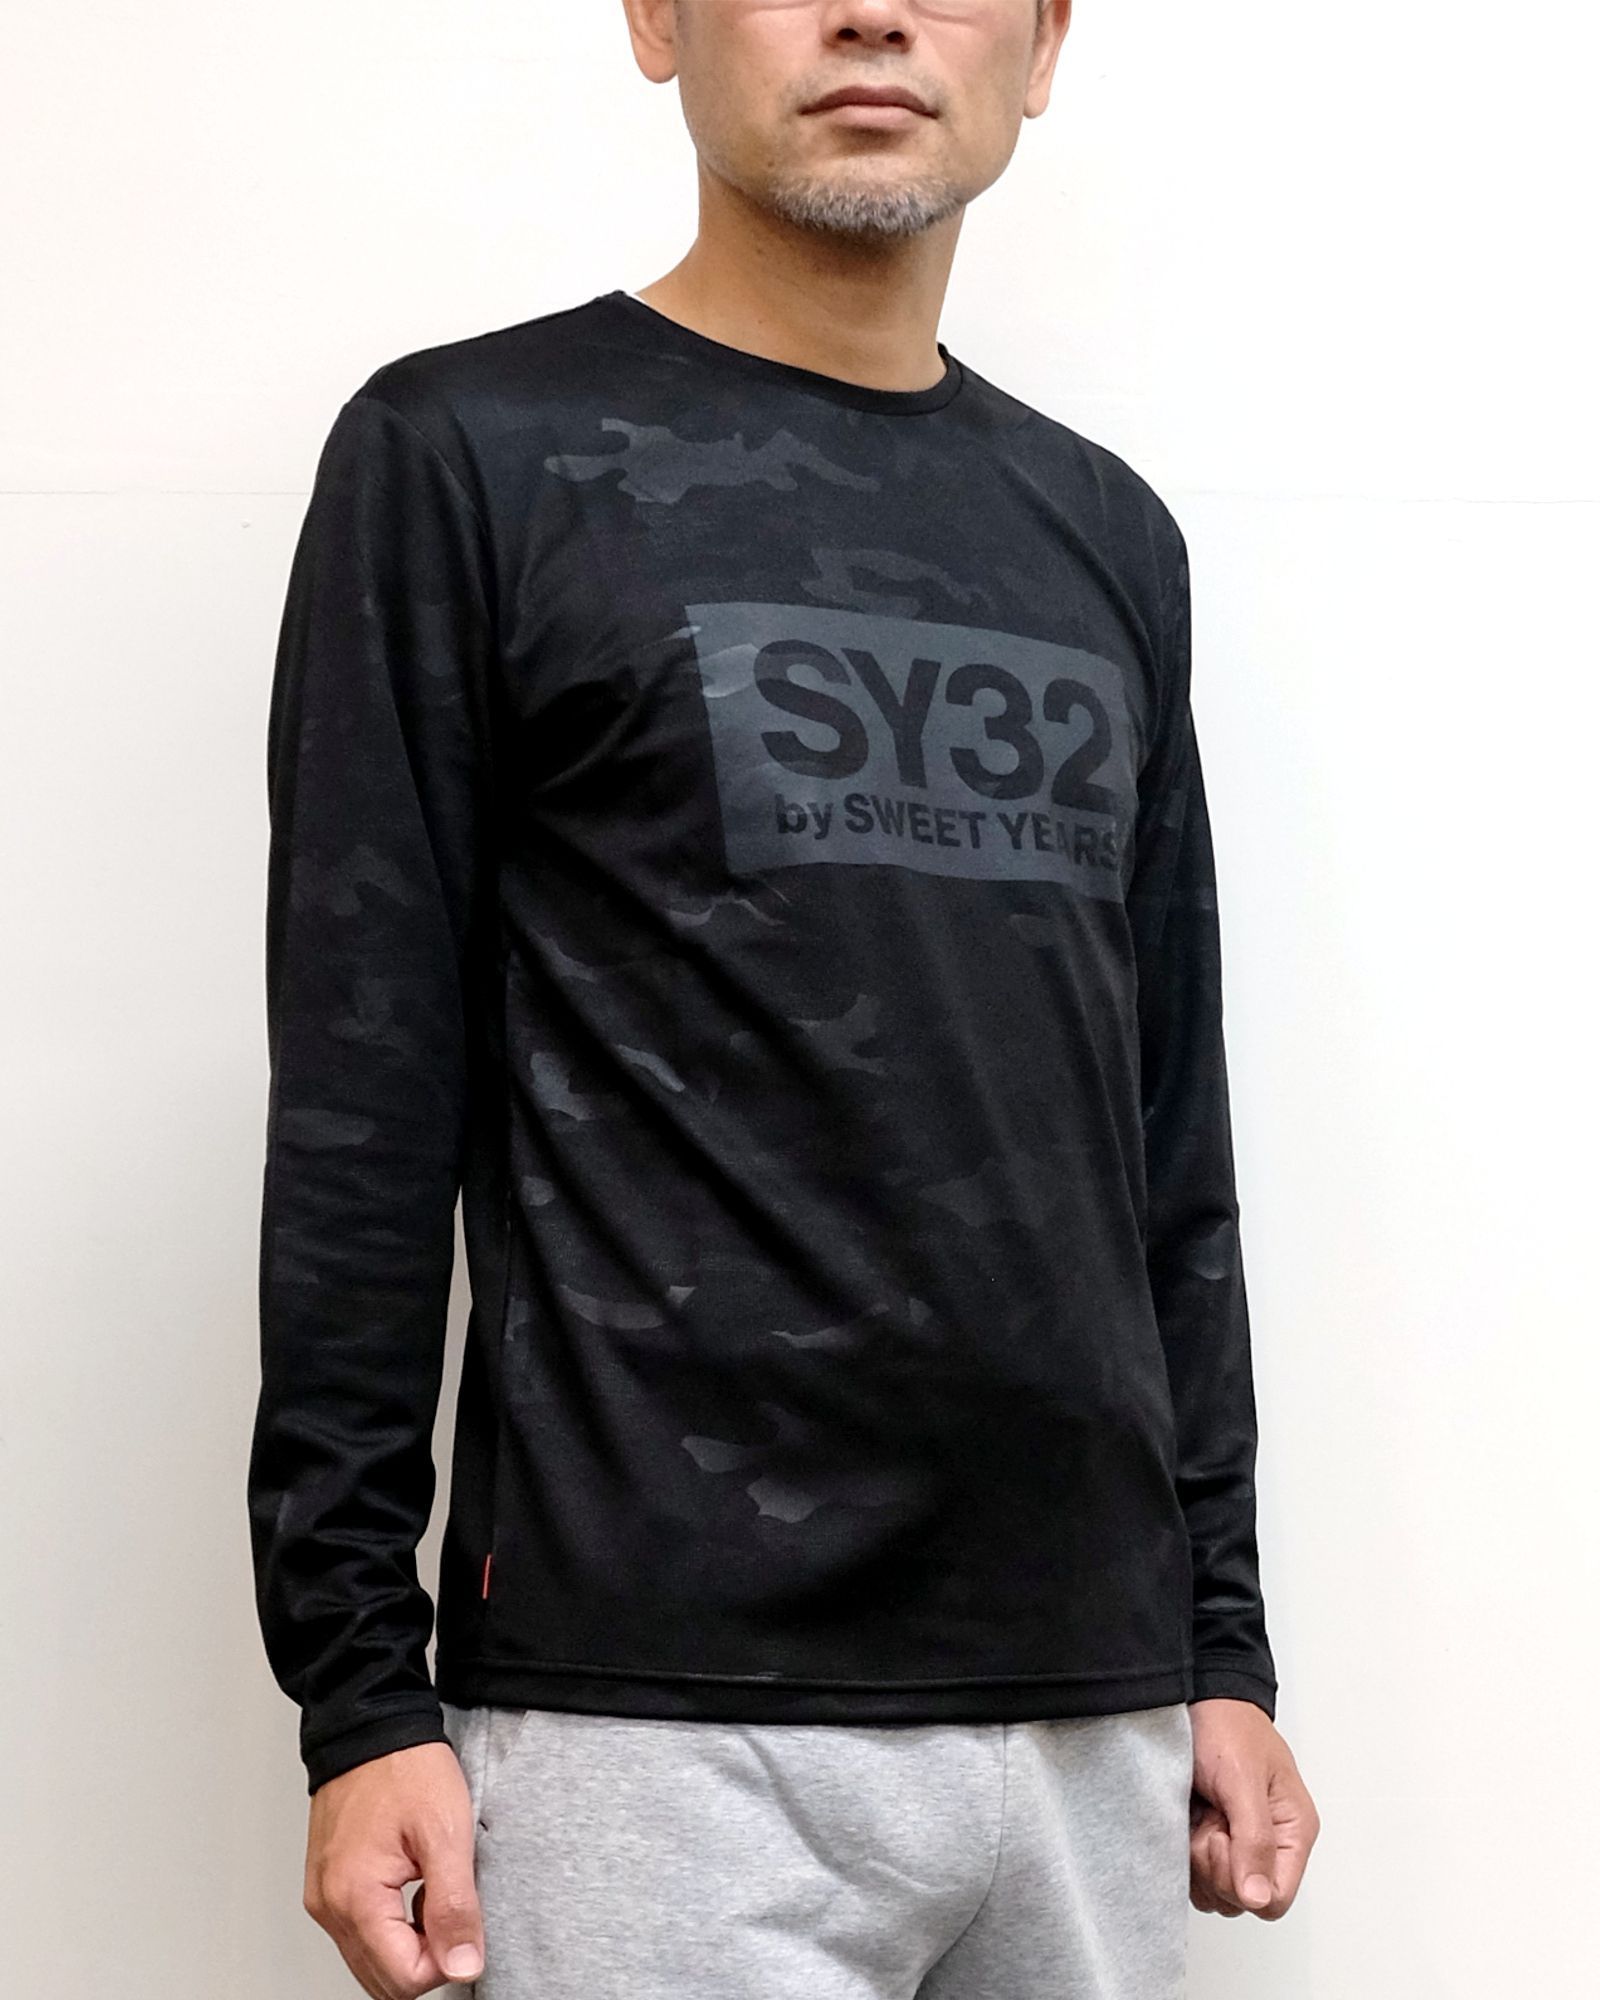 SY32 by SWEET YEARS - 【M 残り1】エンボスカモ ボックスロゴ 長袖TEE 